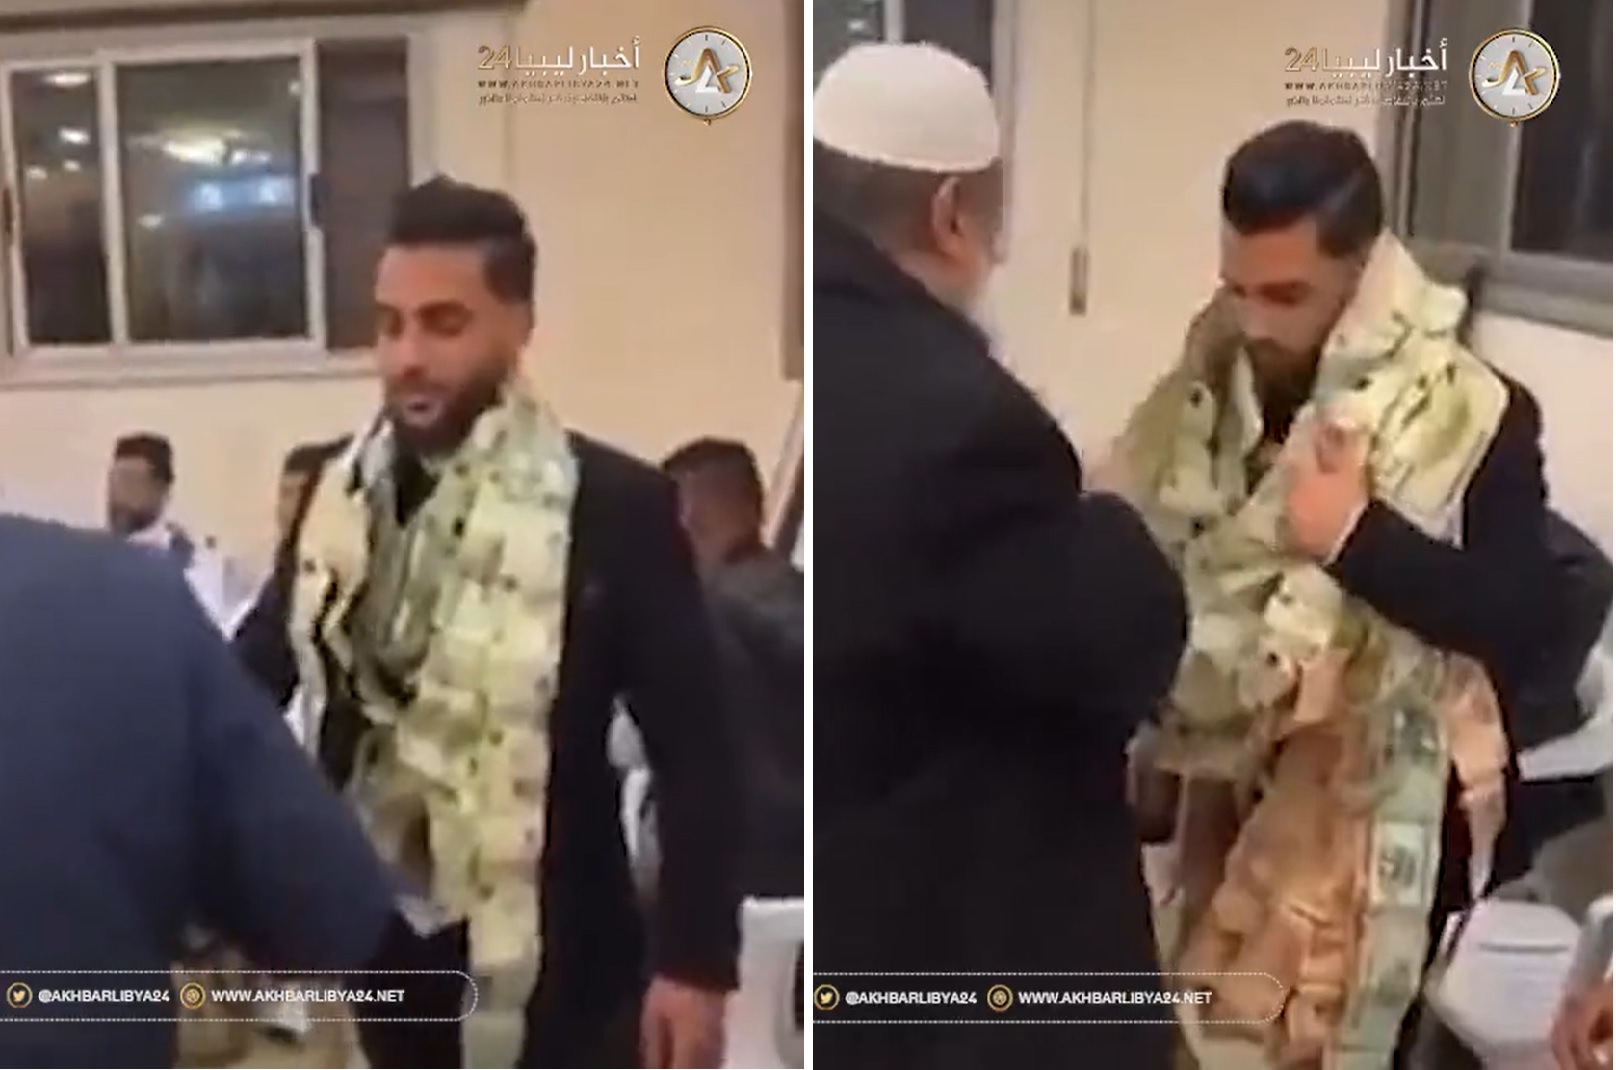 شاهد: احتفال غريب من أصدقاء عريس في ليلة زفافه في ليبيا!